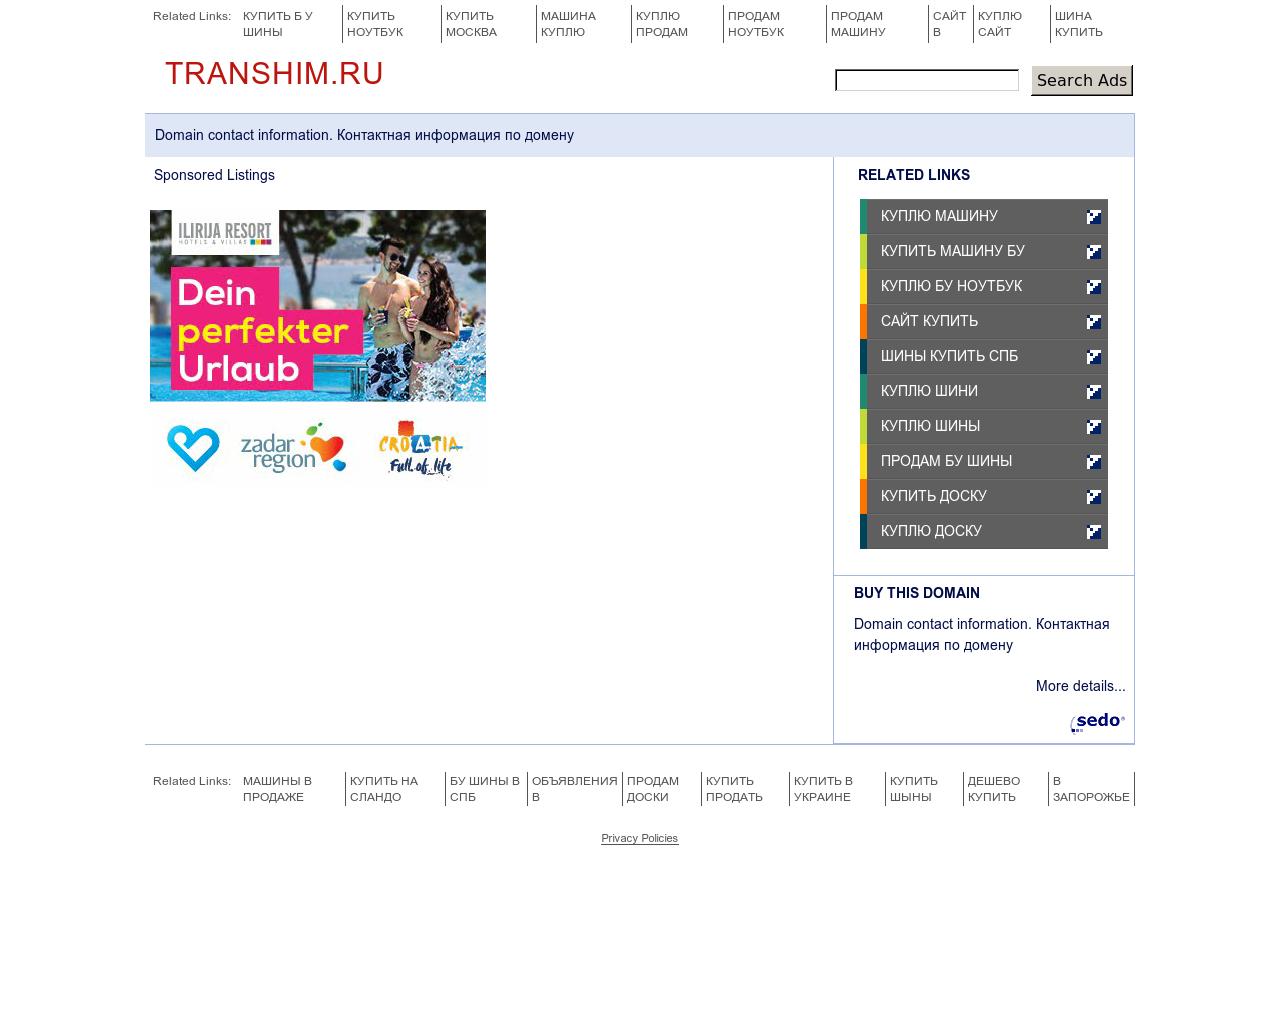 Изображение сайта transhim.ru в разрешении 1280x1024